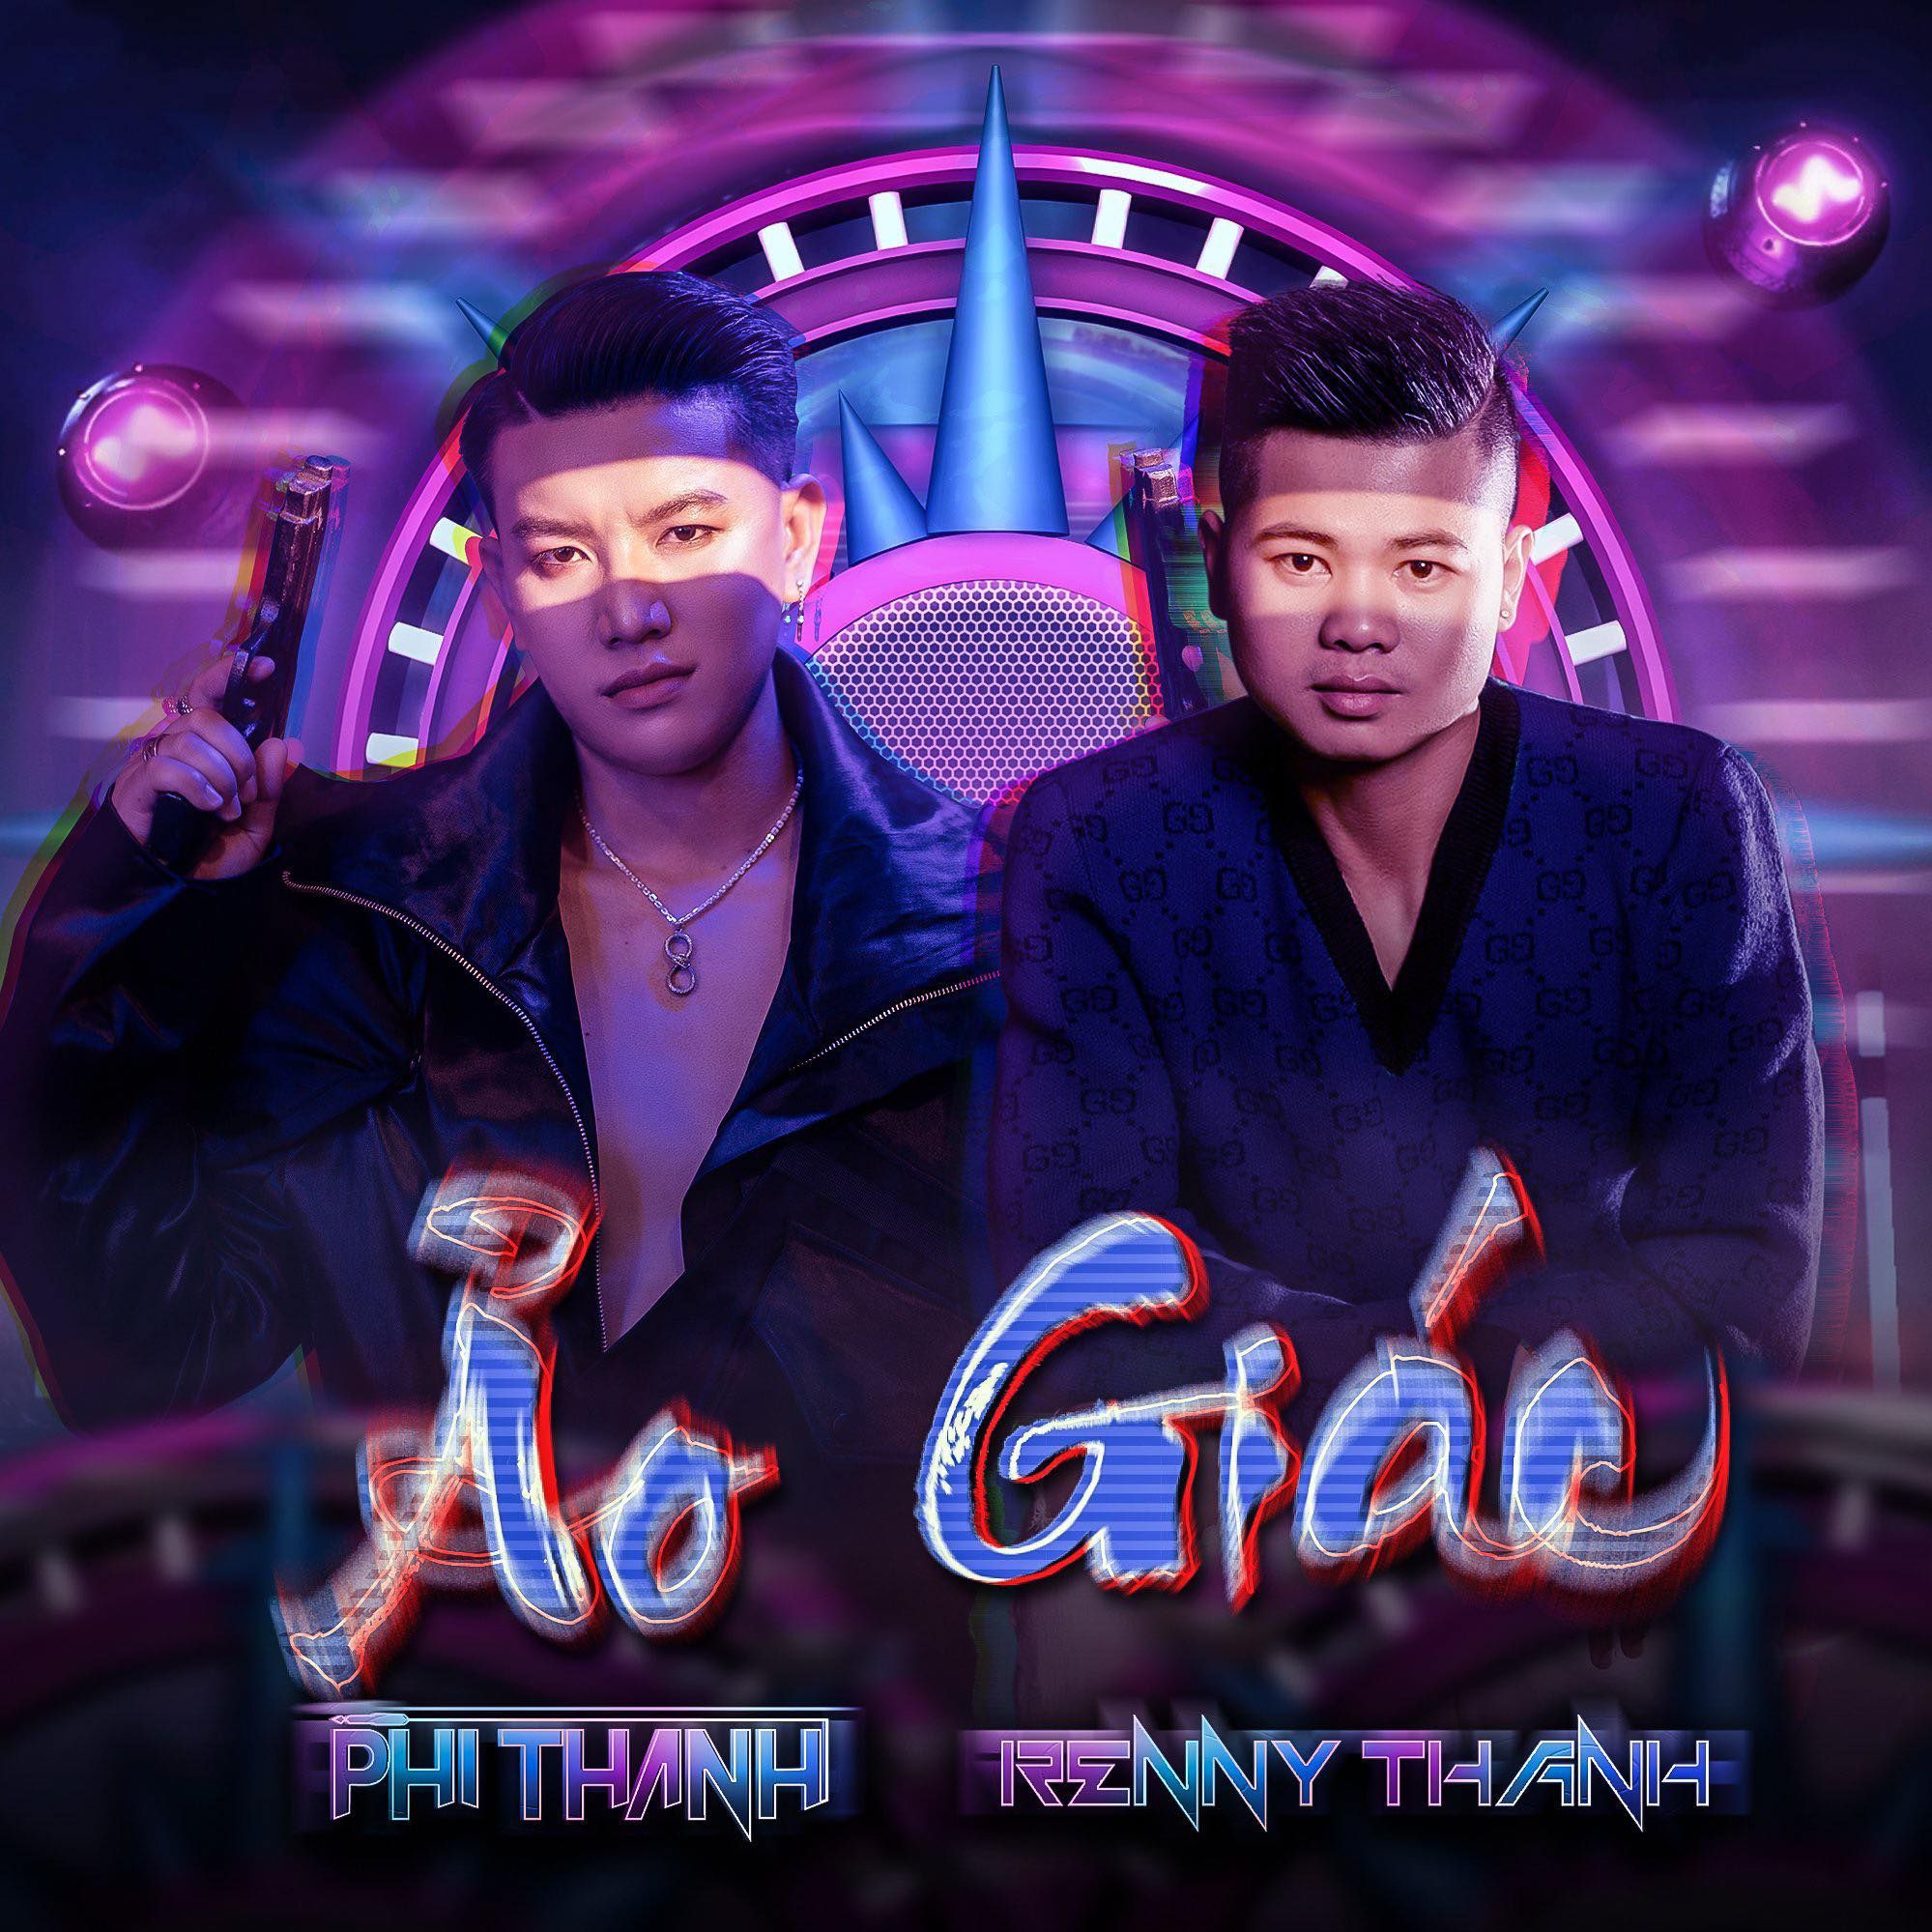 ڈاؤن لوڈ کریں Ảo Giác - Phi Thành Ft Renny Thanh Mix